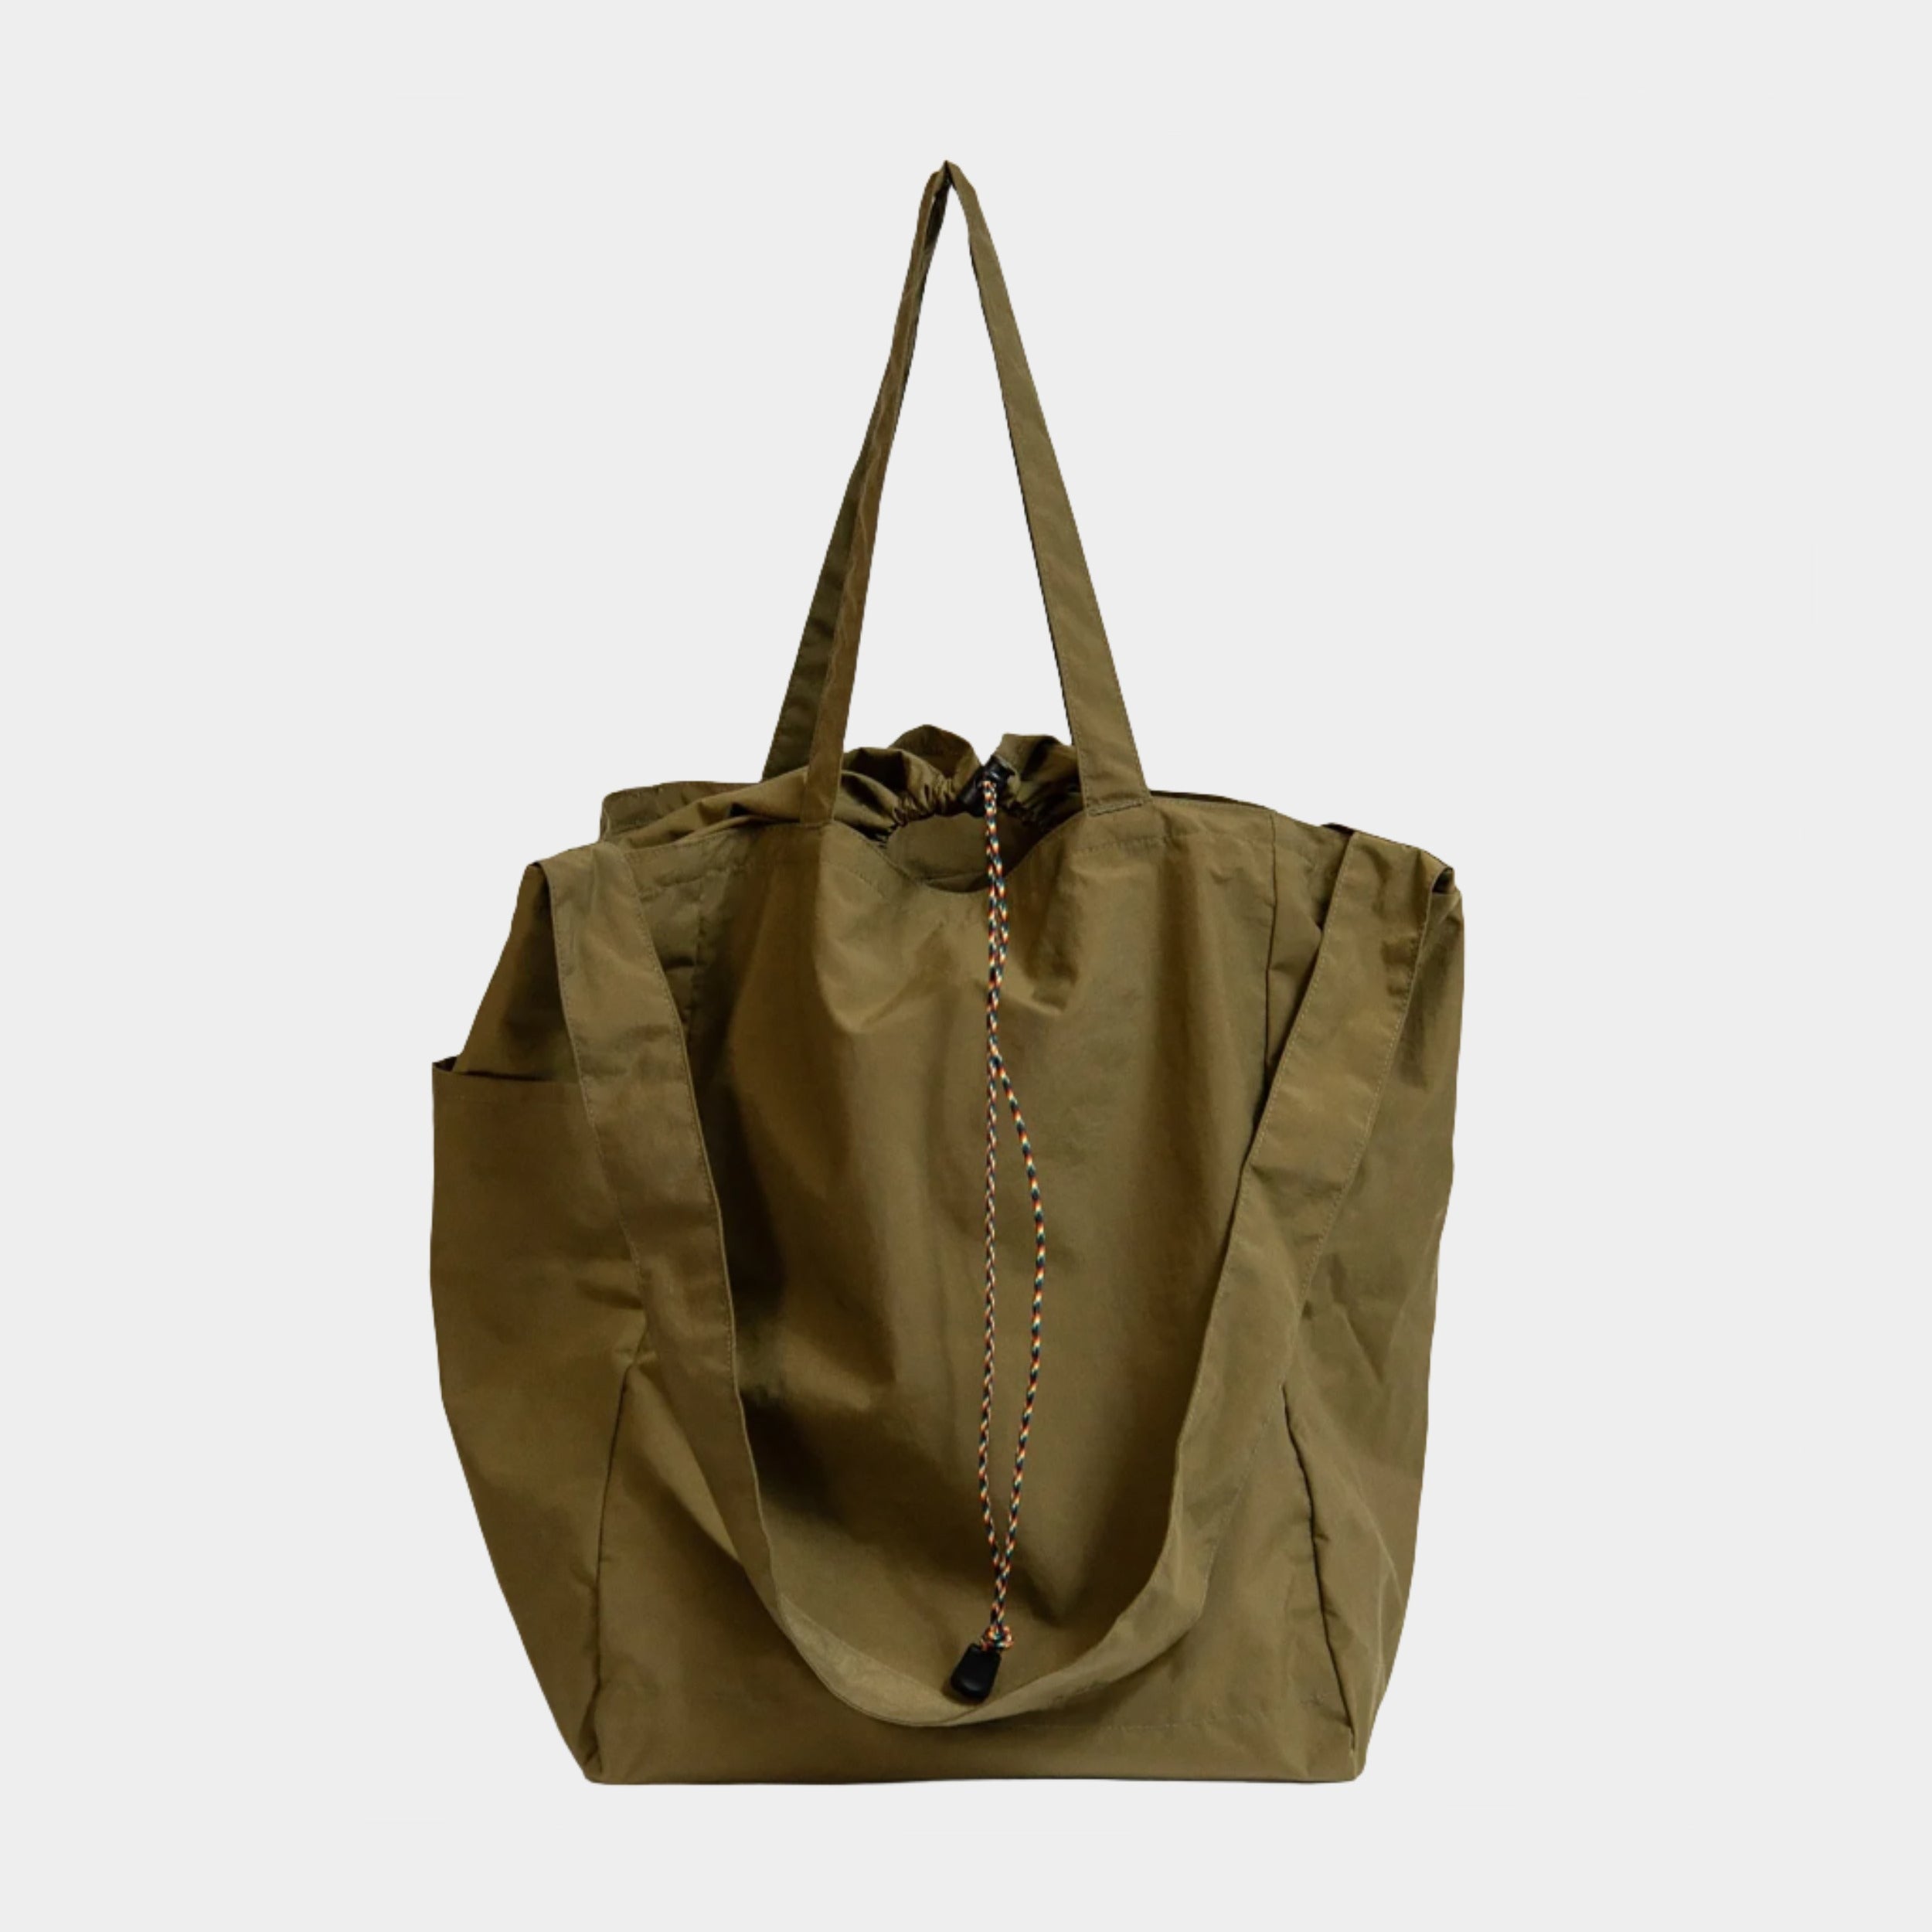 Pocketable 3 Way Tote Bag, Coyote Brown